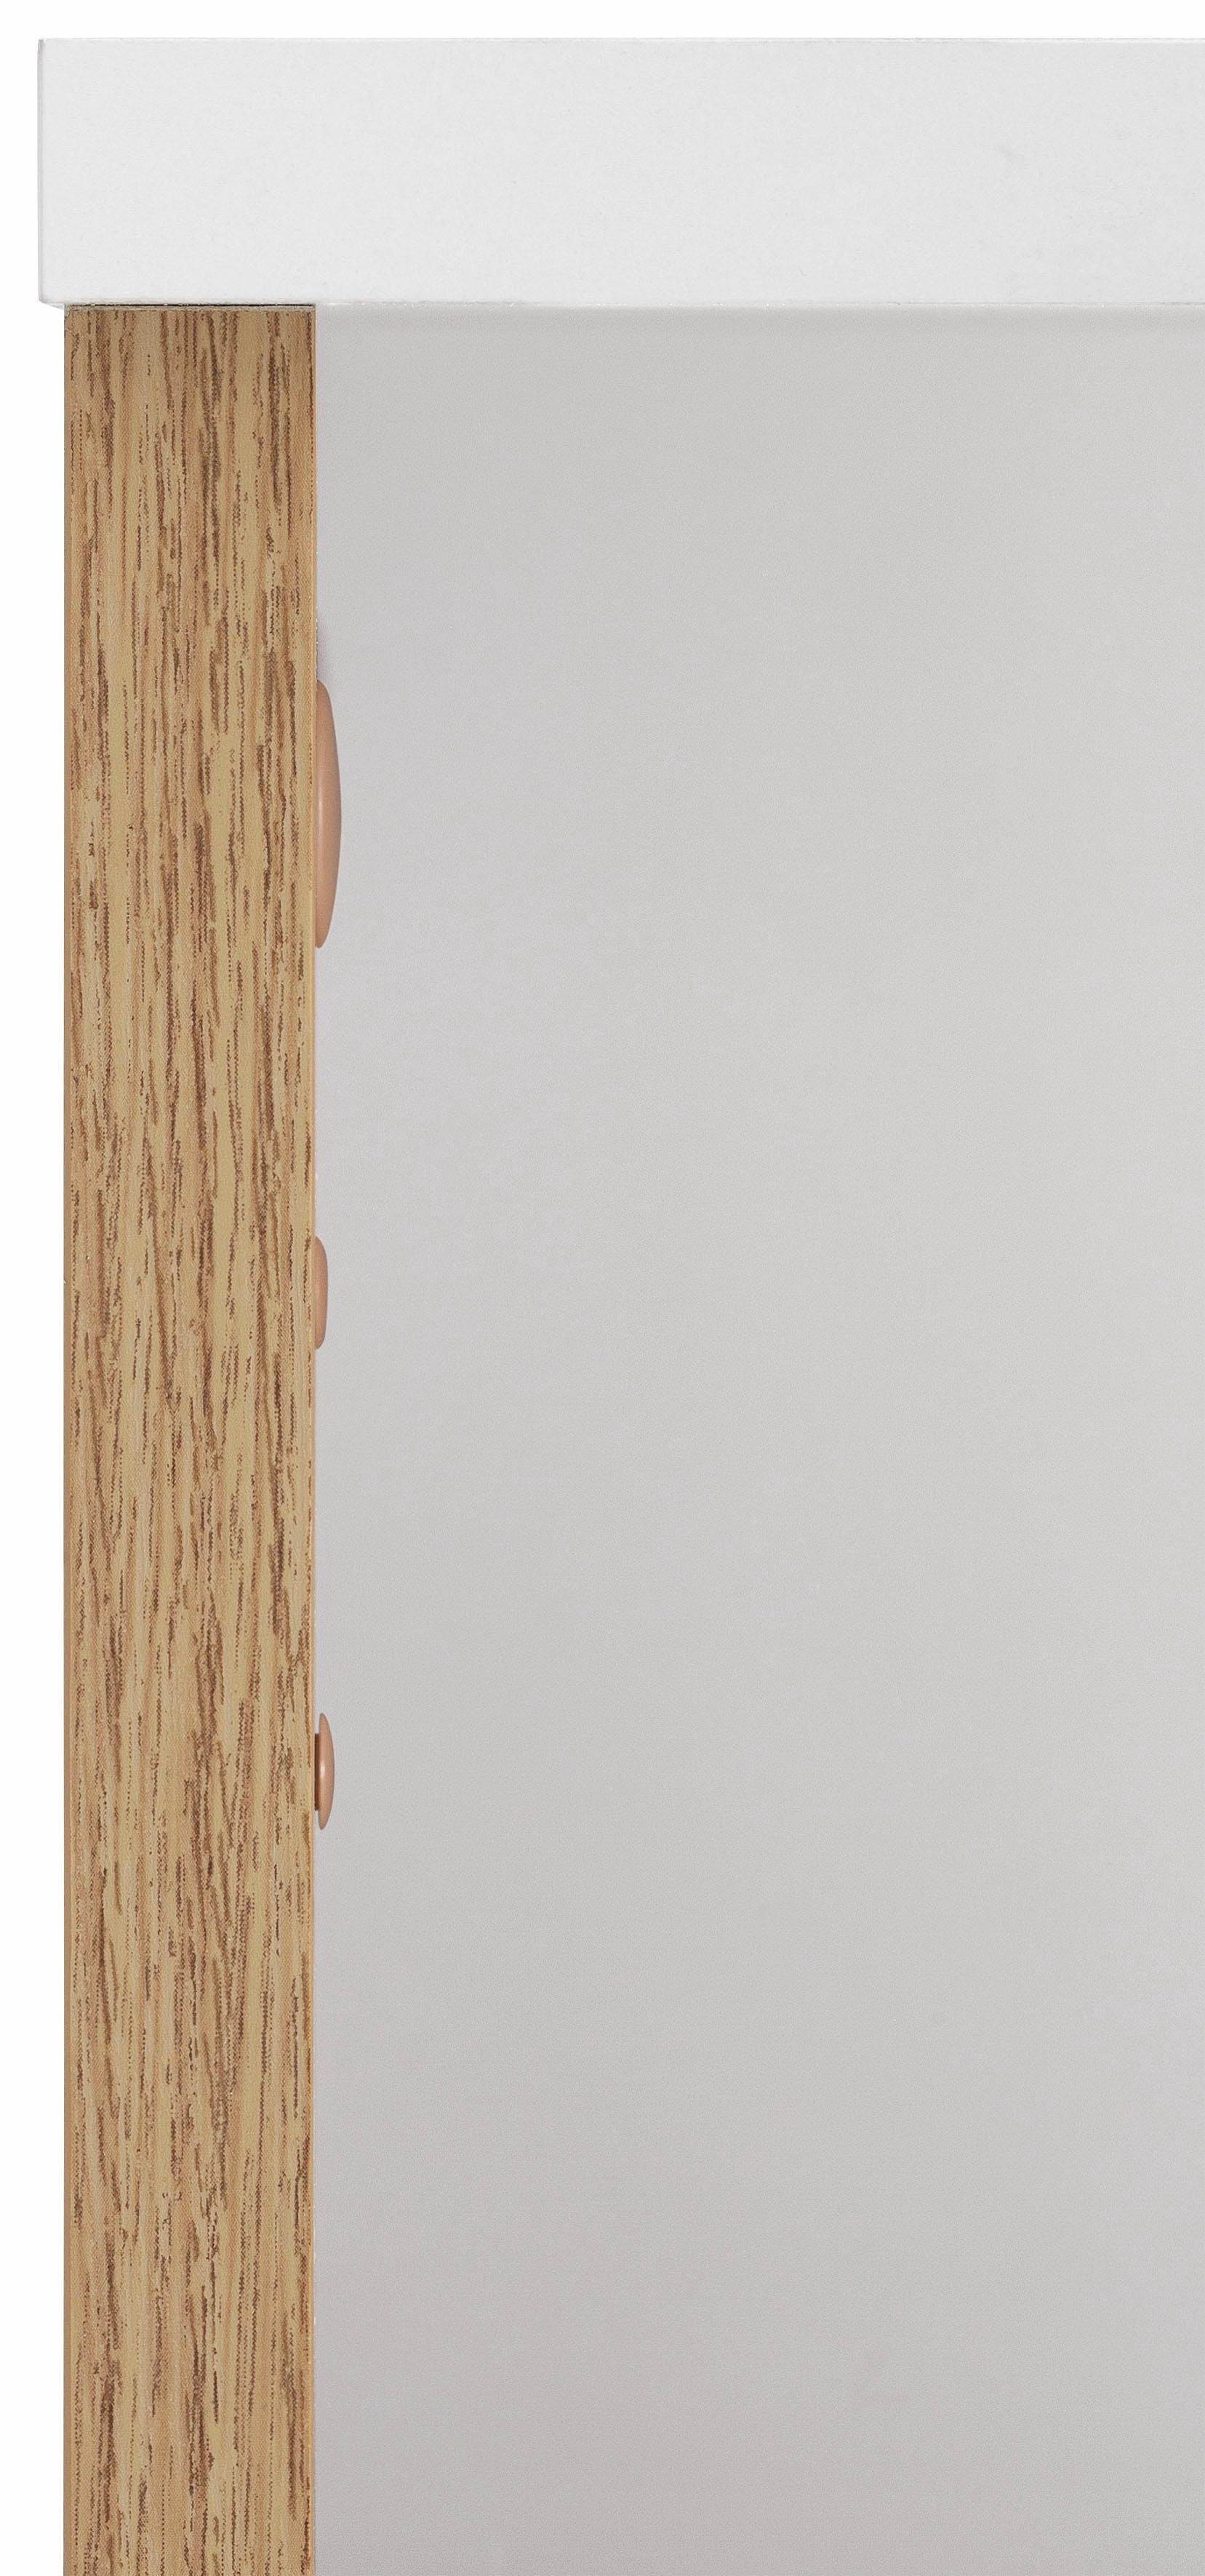 verstellbarer Türanschlag Schildmeyer | 30 cm, Breite weiß-wotaneichefb. Einlegeboden, Midischrank Rhodos wechselbarer wotaneiche